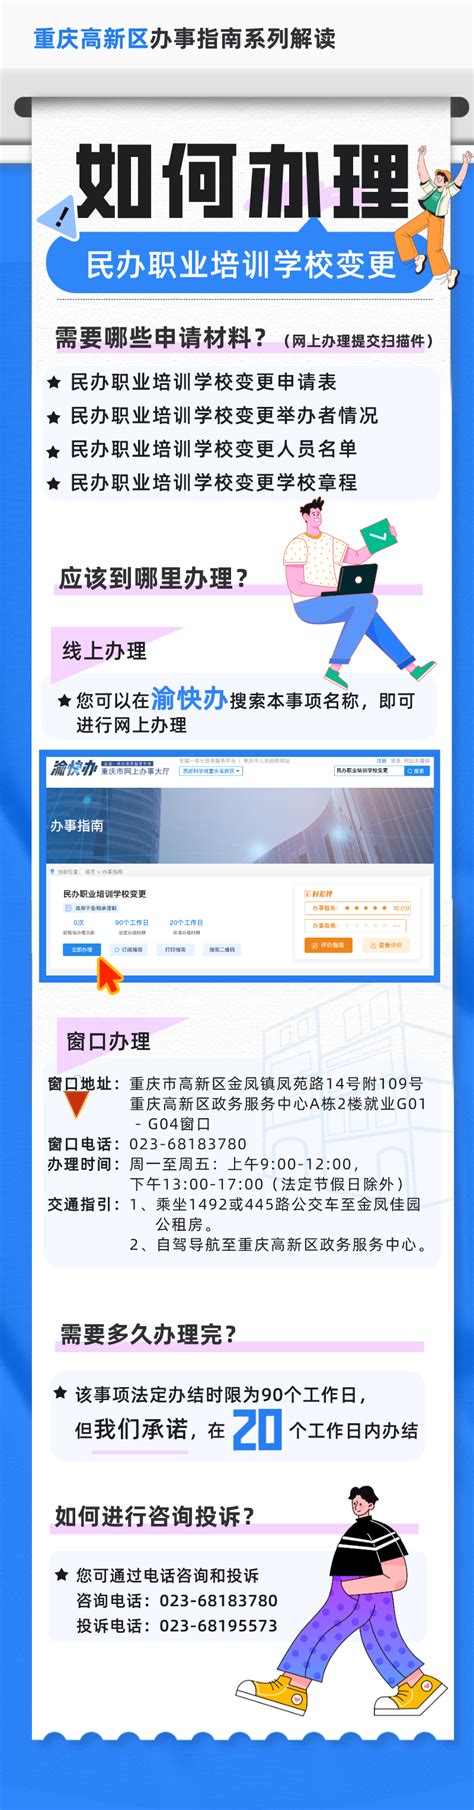 民办职业培训学校变更_重庆高新技术产业开发区管理委员会